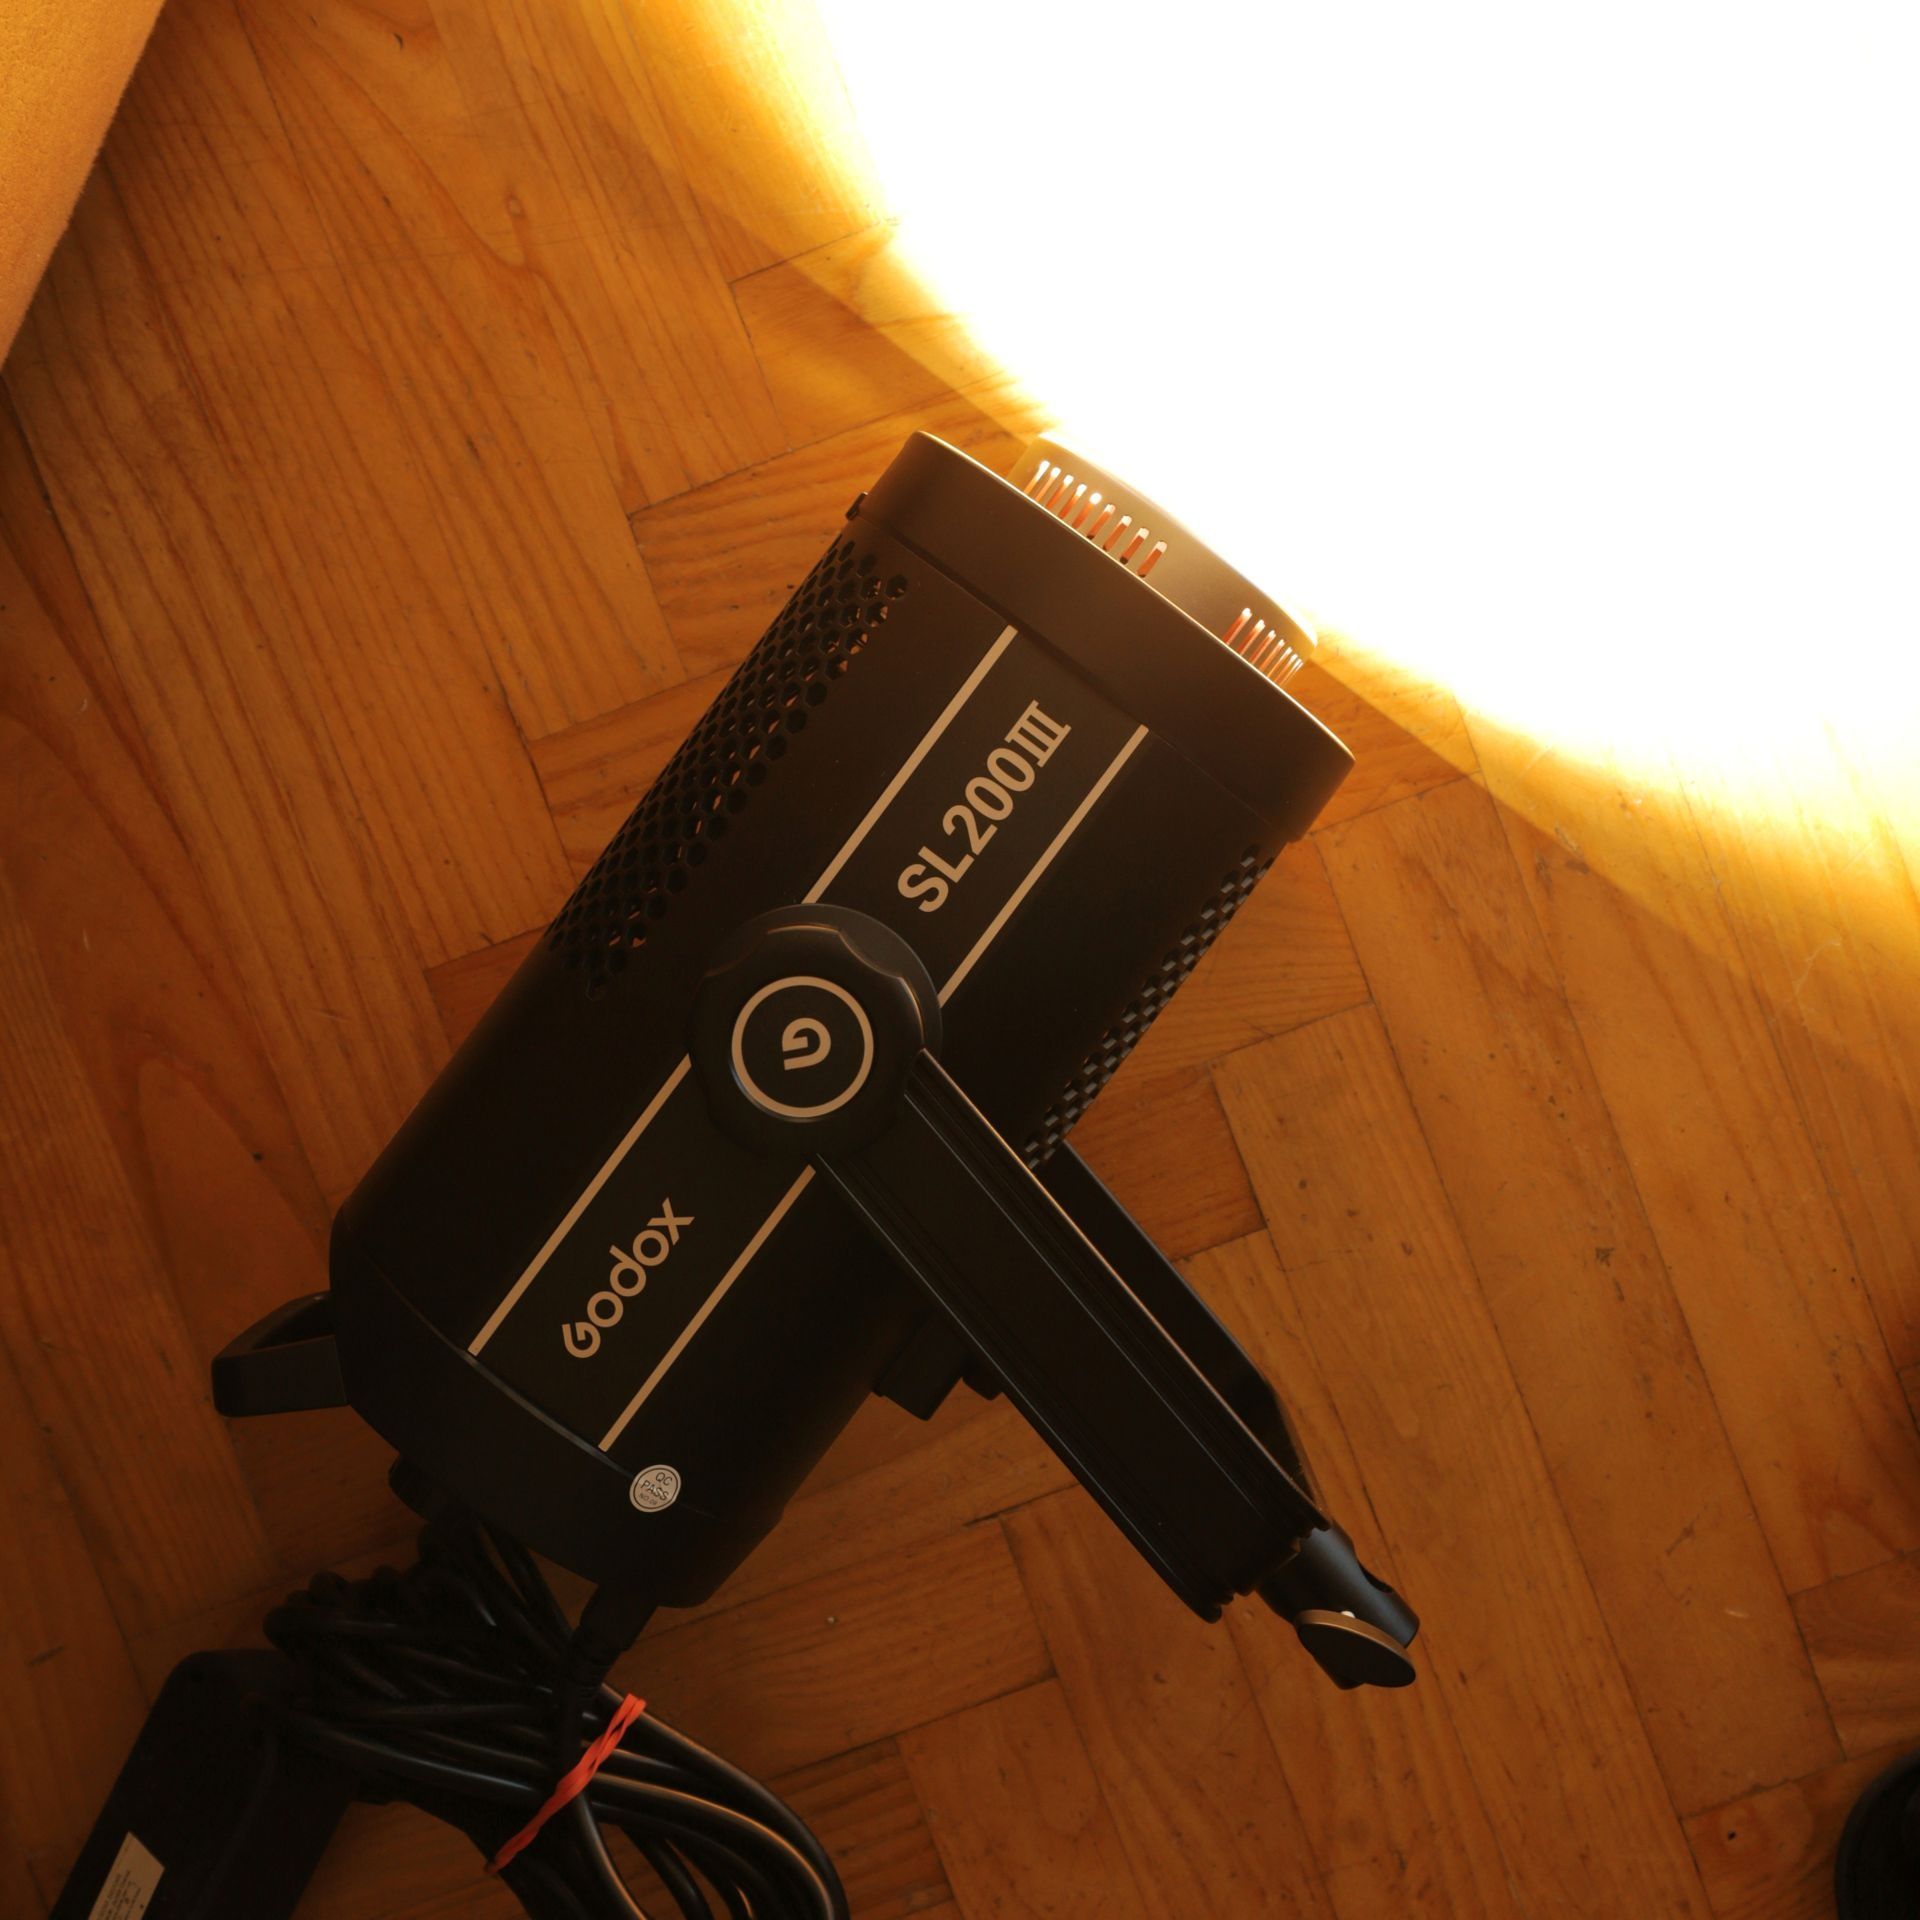 Idealna! GODOX SL200 III lampa LED 200W 5600K foto video aputure